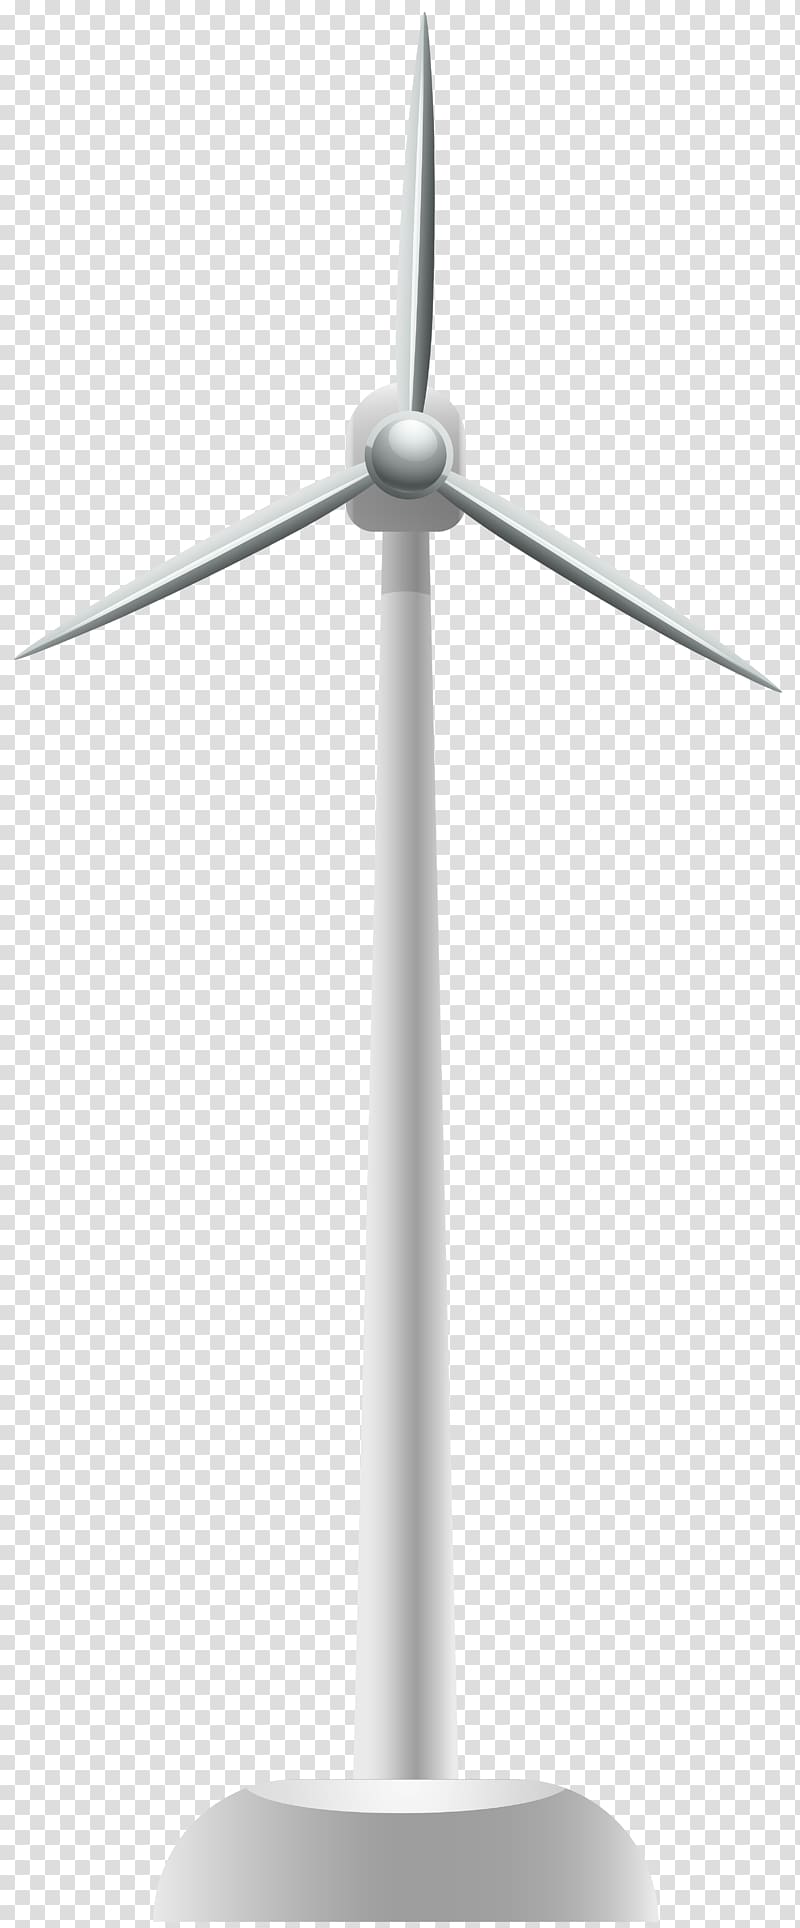 Wind farm Wind turbine Windmill , Wind Turbine transparent background PNG clipart